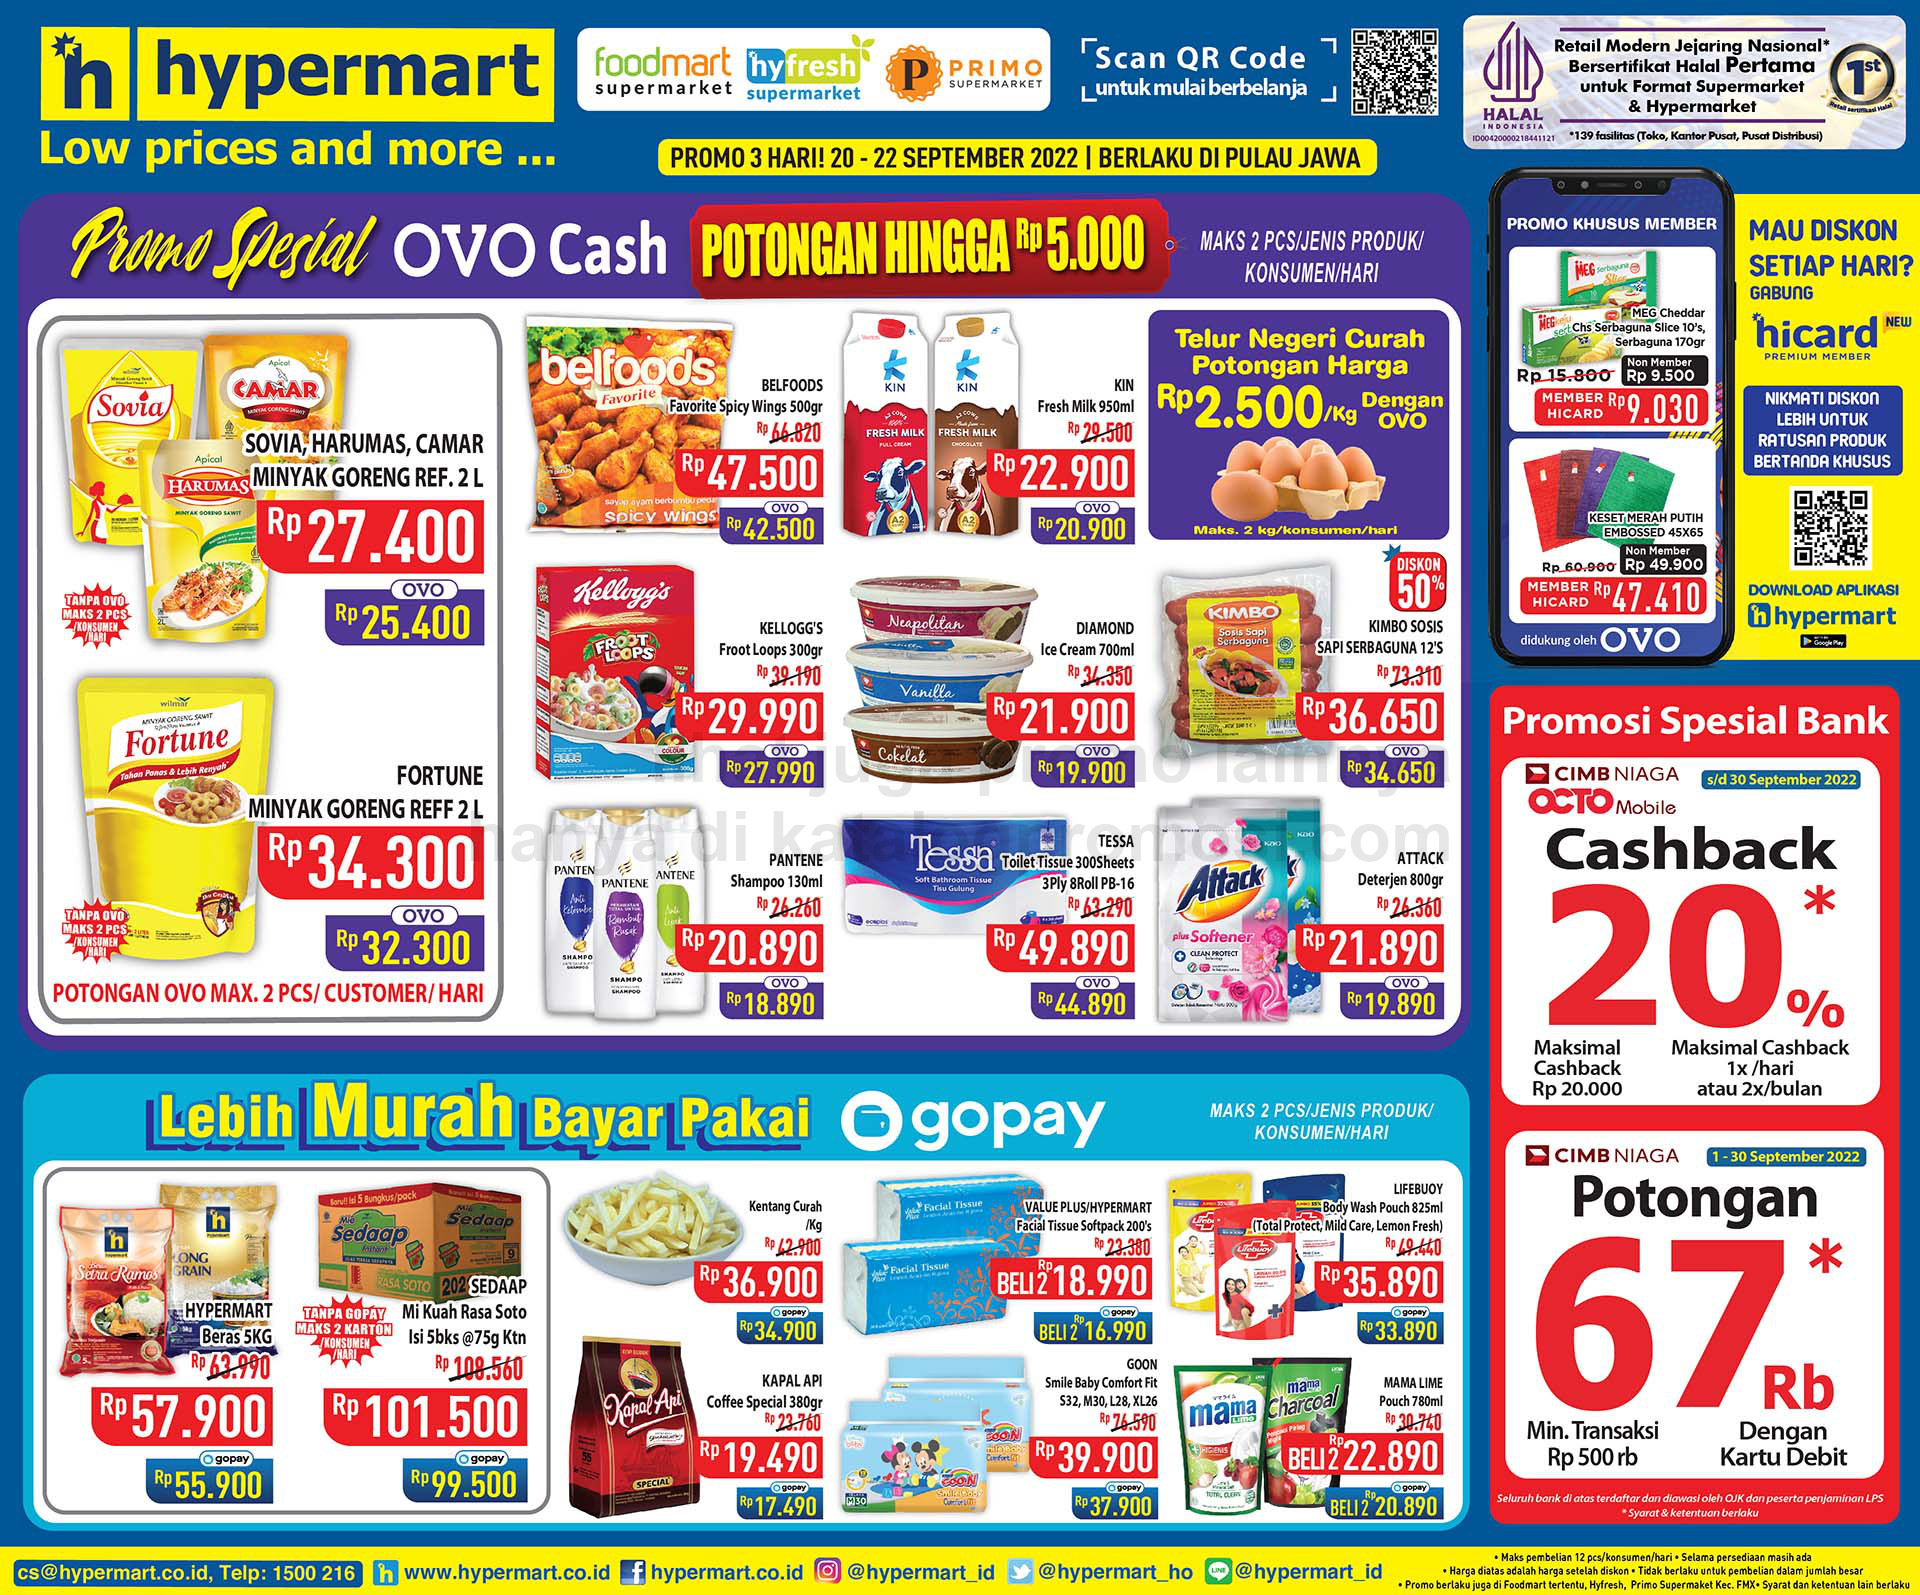 Katalog Hypermart Promo Weekday periode 20-22 September 2022